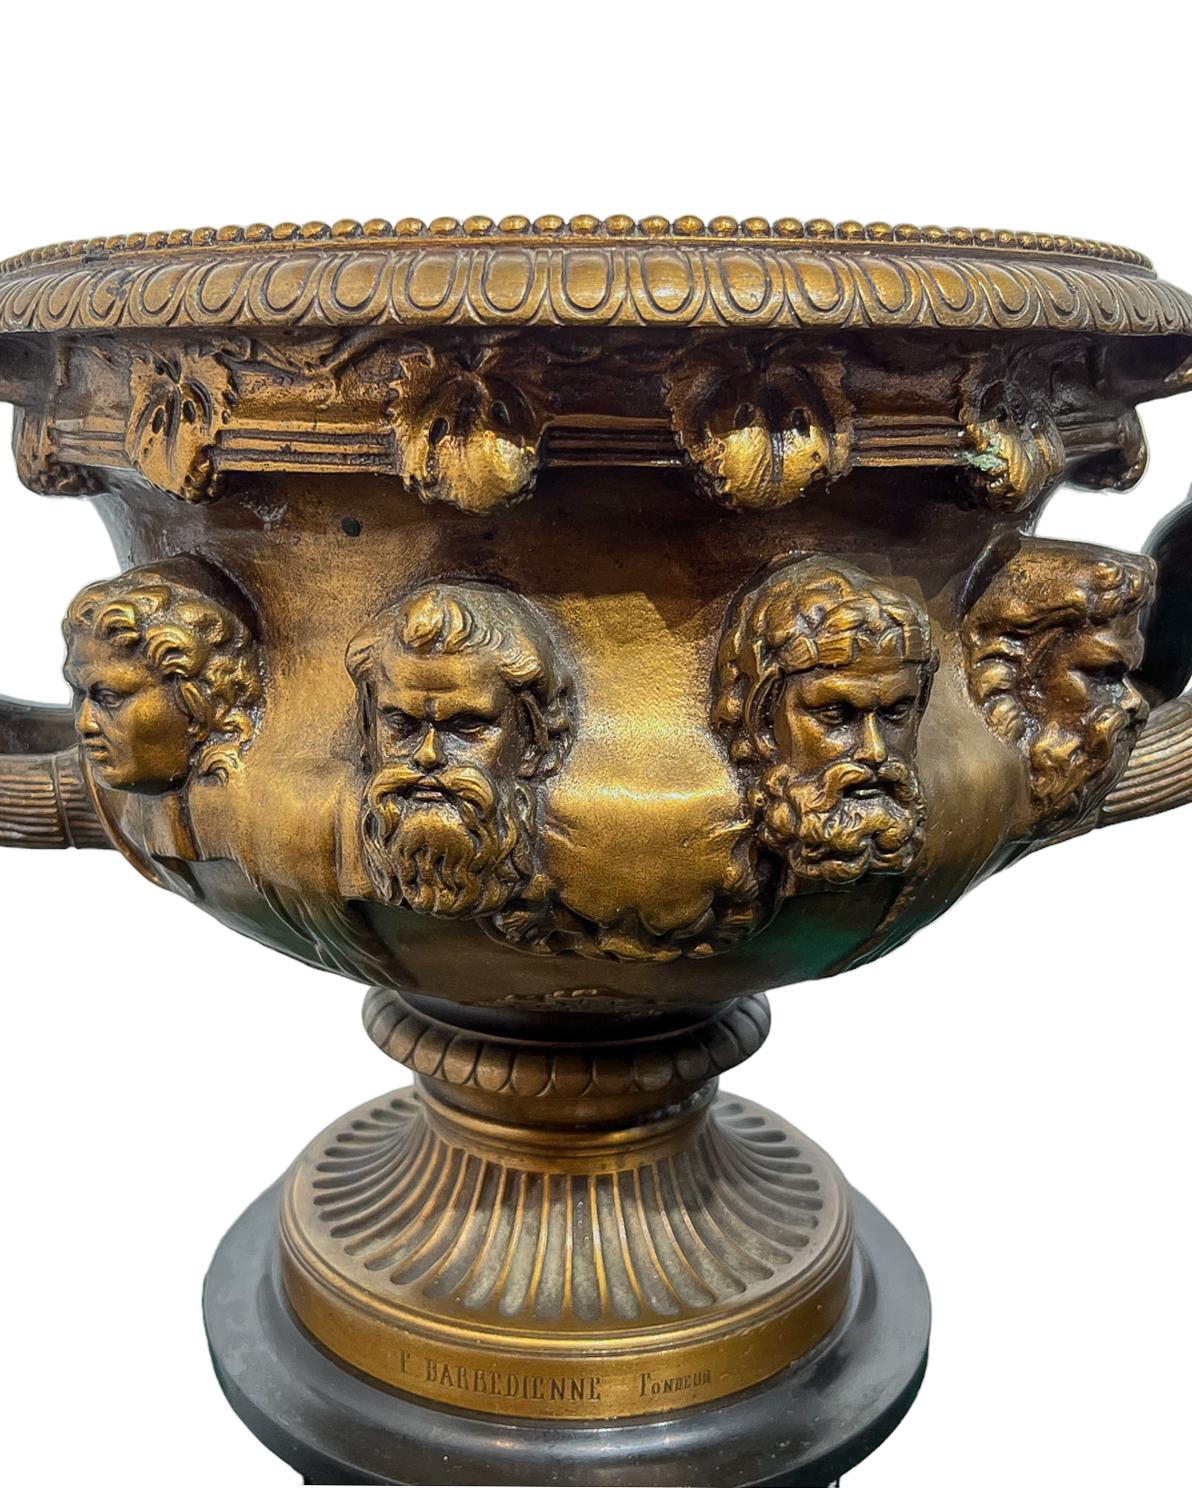 Modèle en bronze patiné du vase Warwick à ornementation bacchique de la fonderie Barbedienne. Ce vase est inspiré du célèbre vase romain en marbre, dont les fragments ont été découverts en 1771 dans les ruines de la villa de Hardian, près de Tivoli,